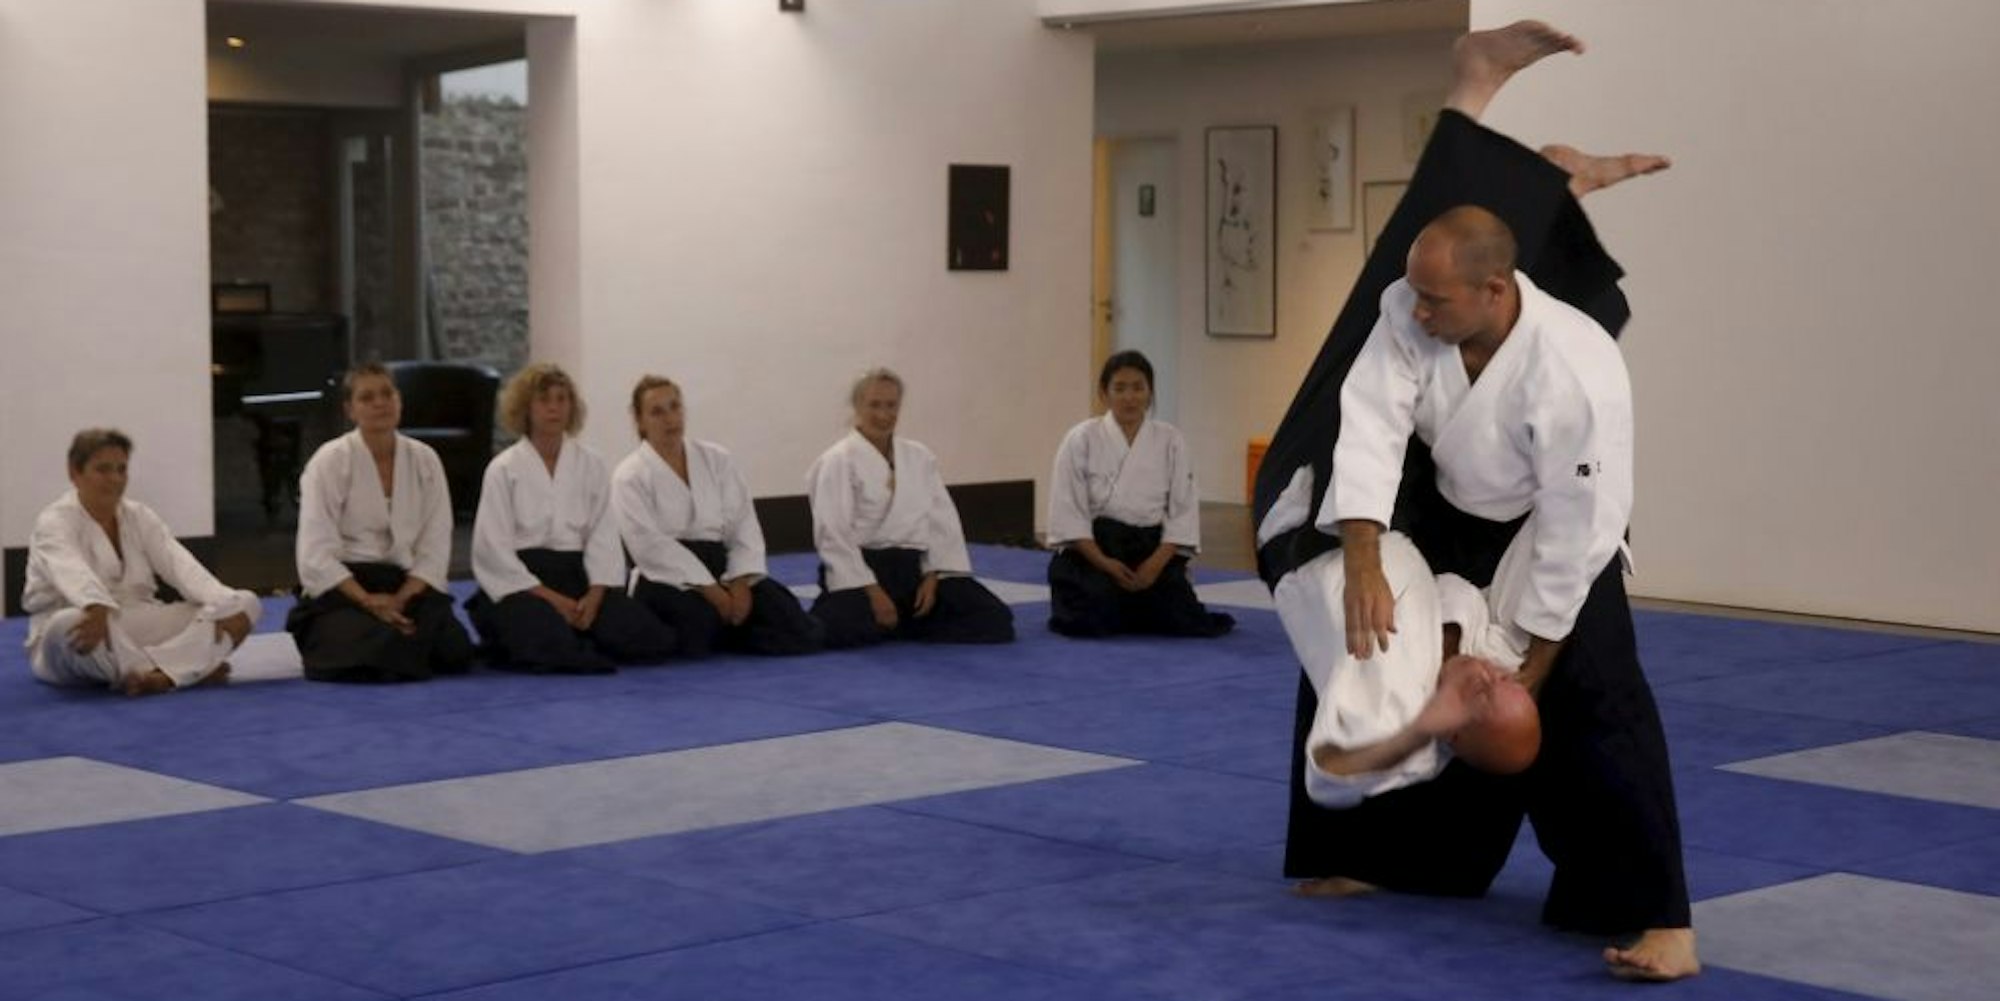 Jörg Kretzschmar (r.) demonstriert seinen Schülern die komplexen Bewegungen des Aikido.